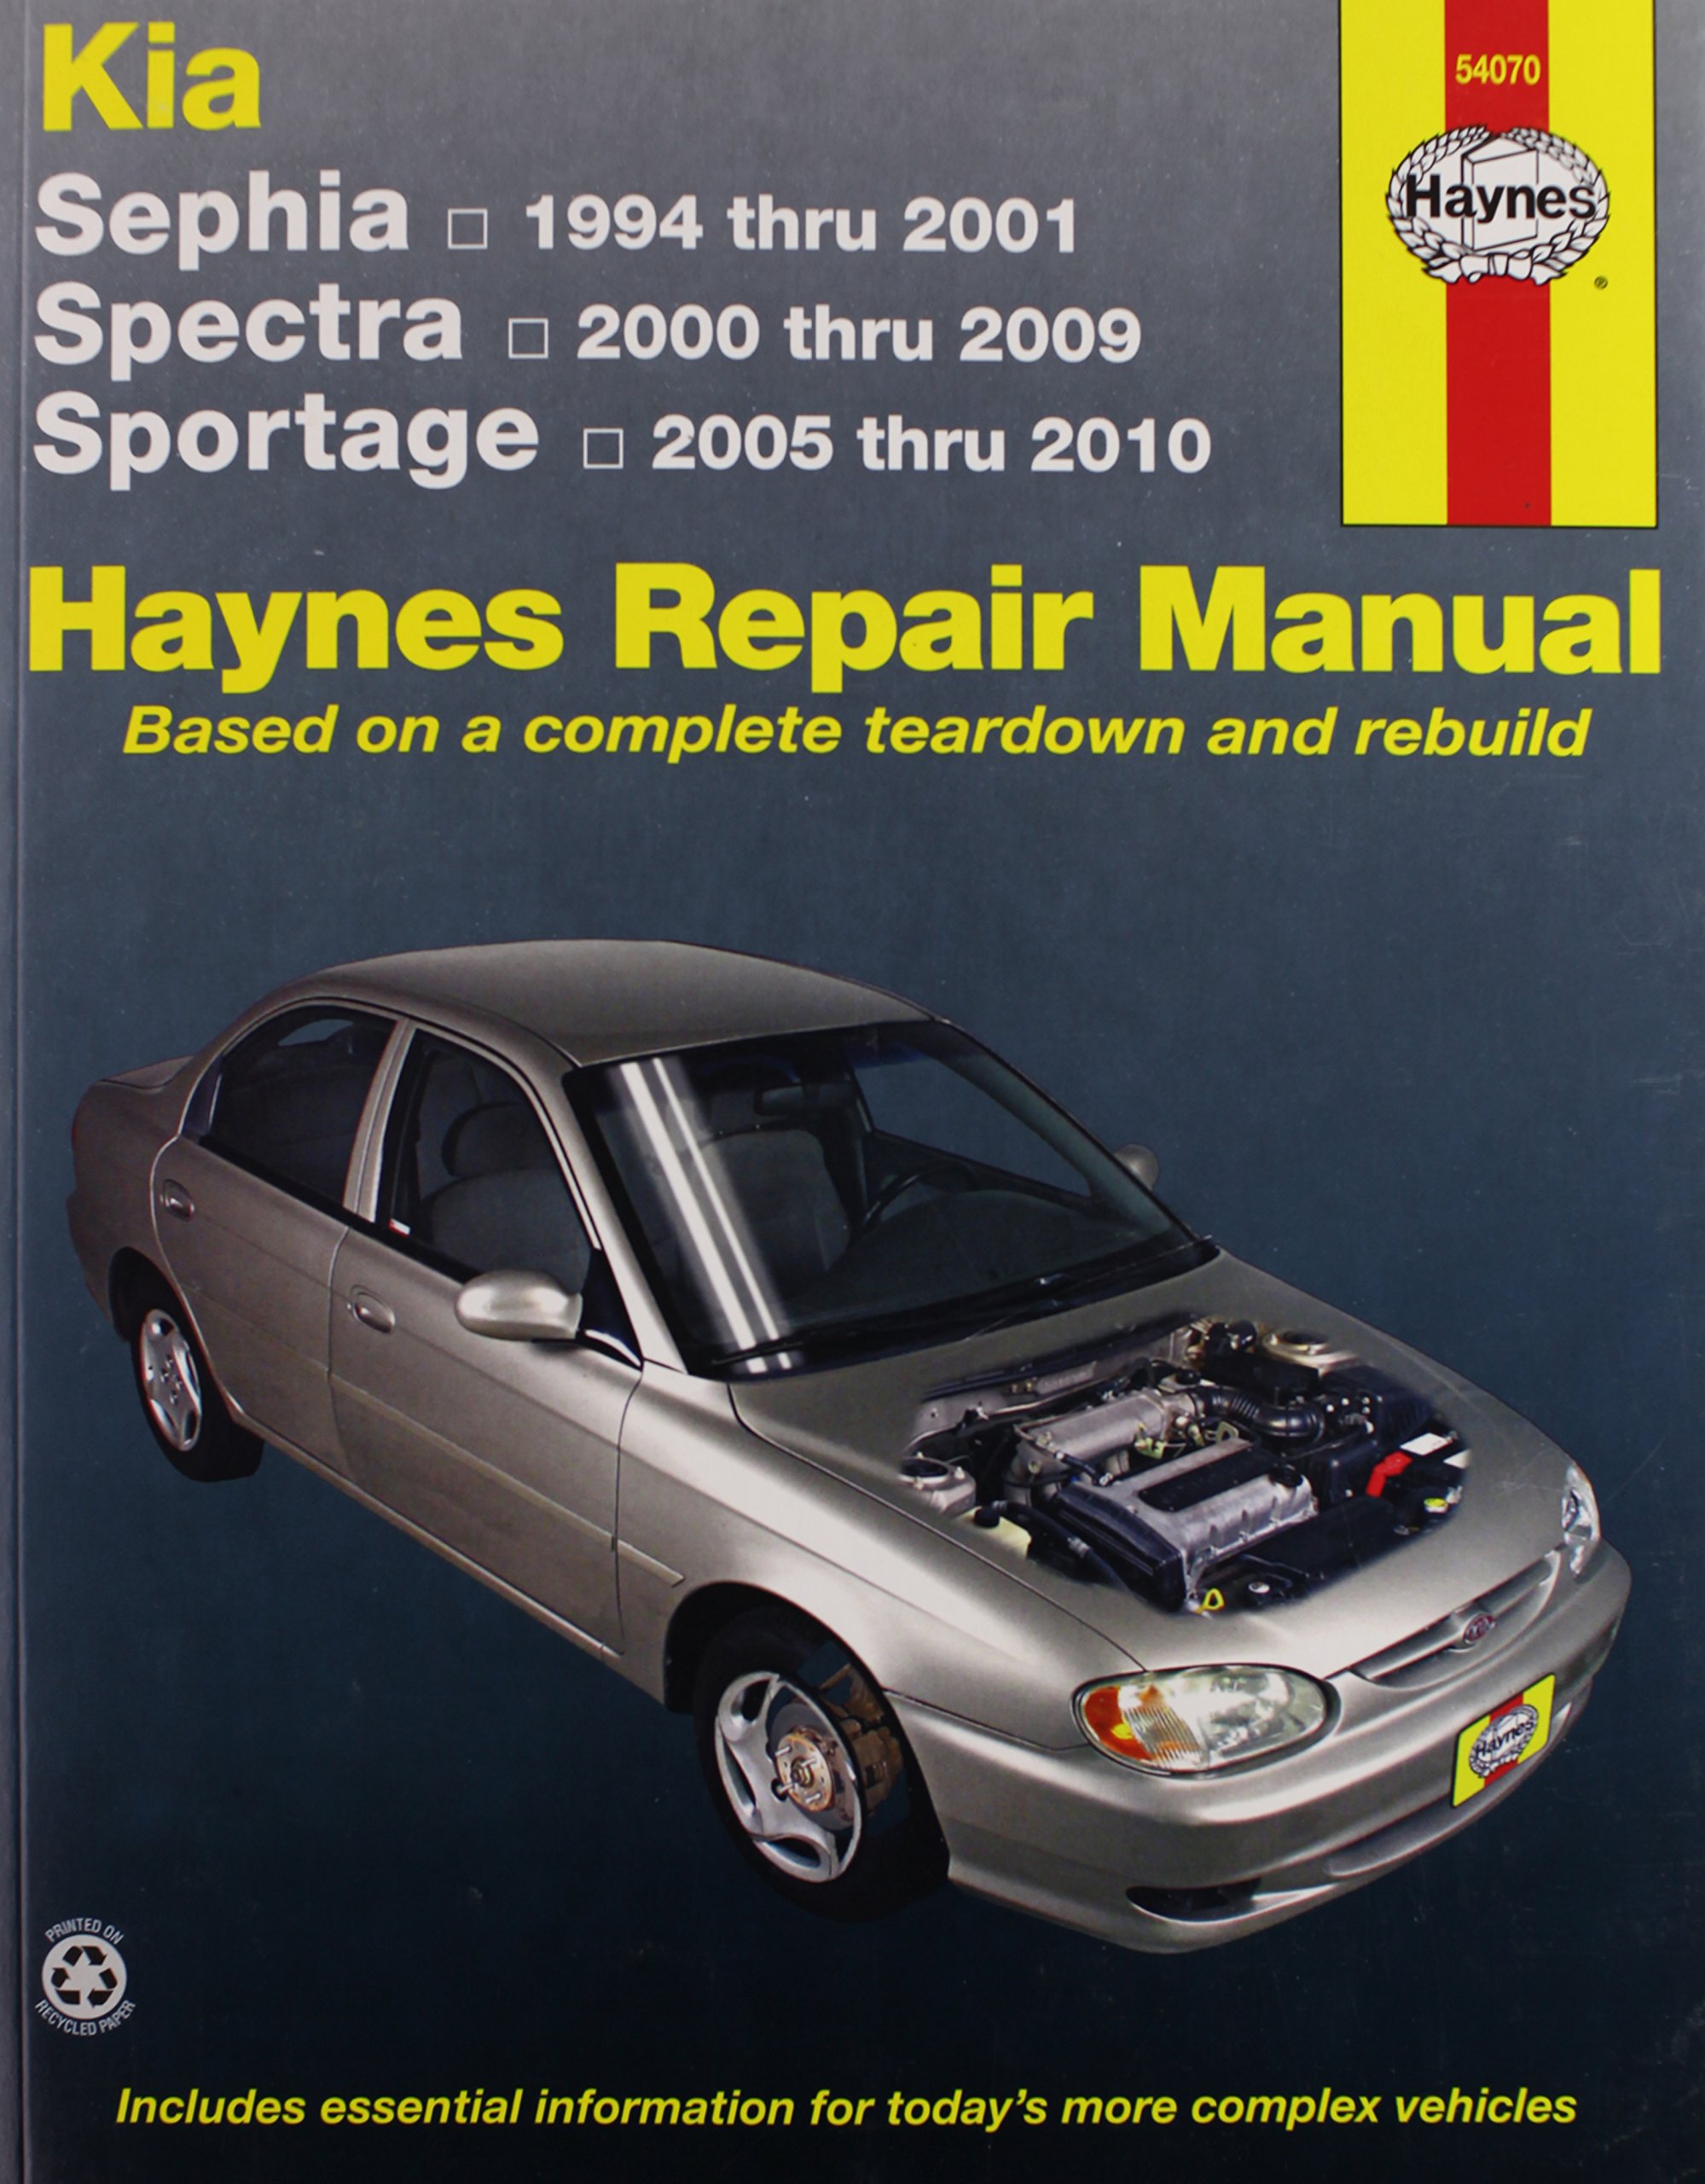 96 honda passport haynes repair manual free pdf download